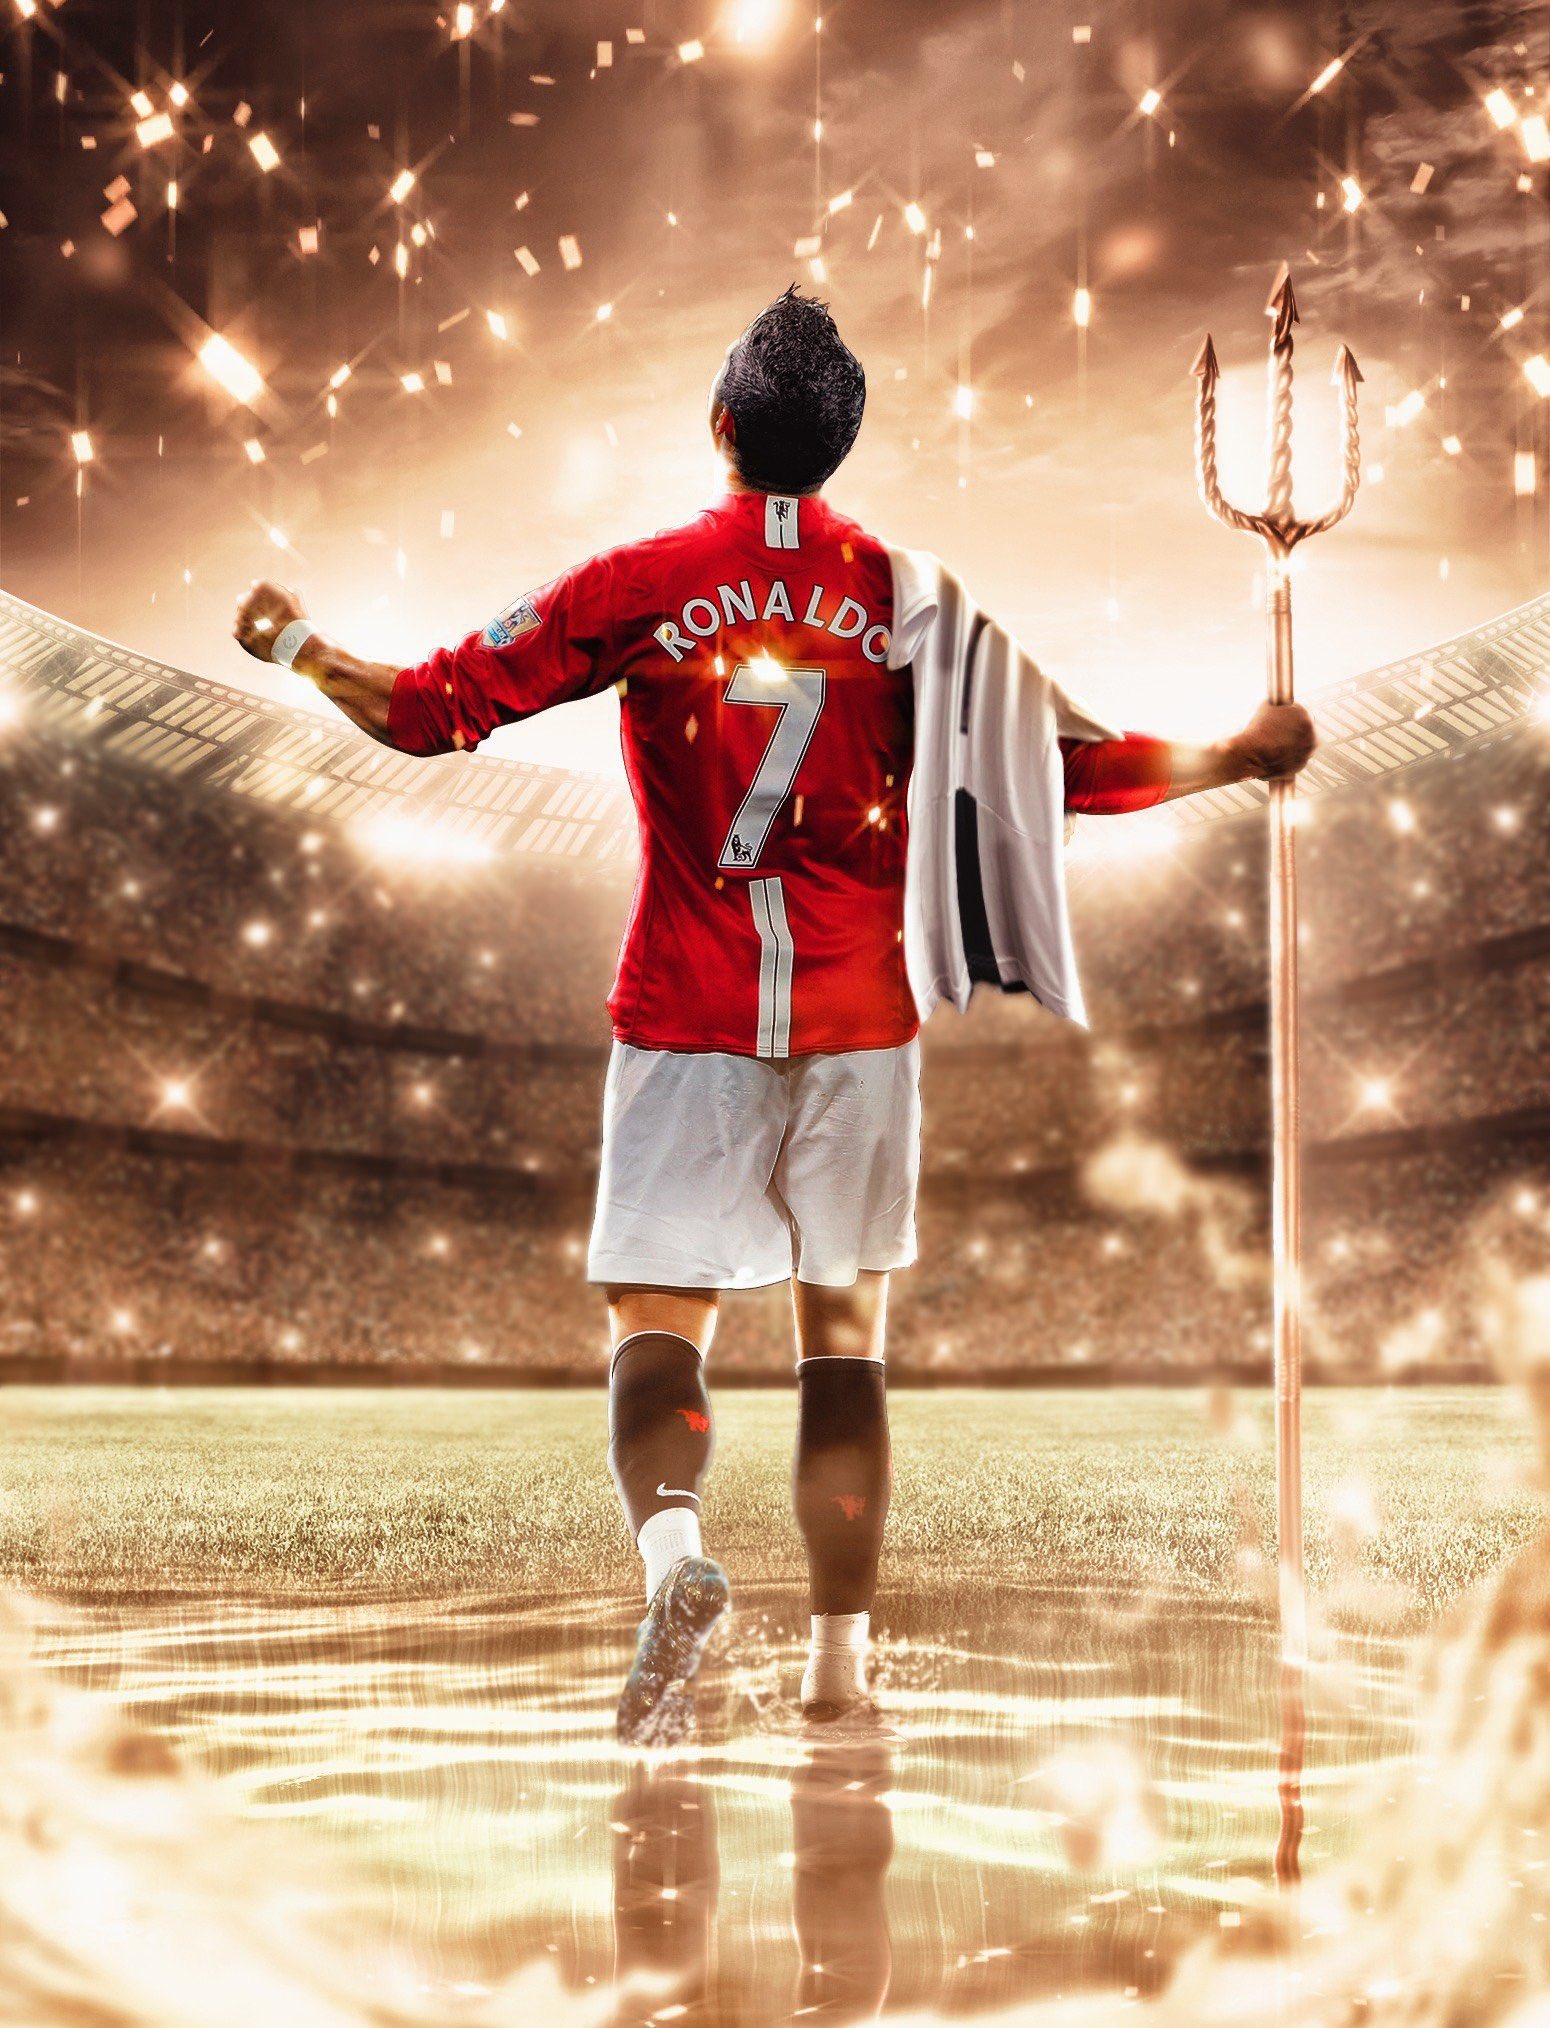 Cristiano Ronaldo Manchester United 2021 wallpaper